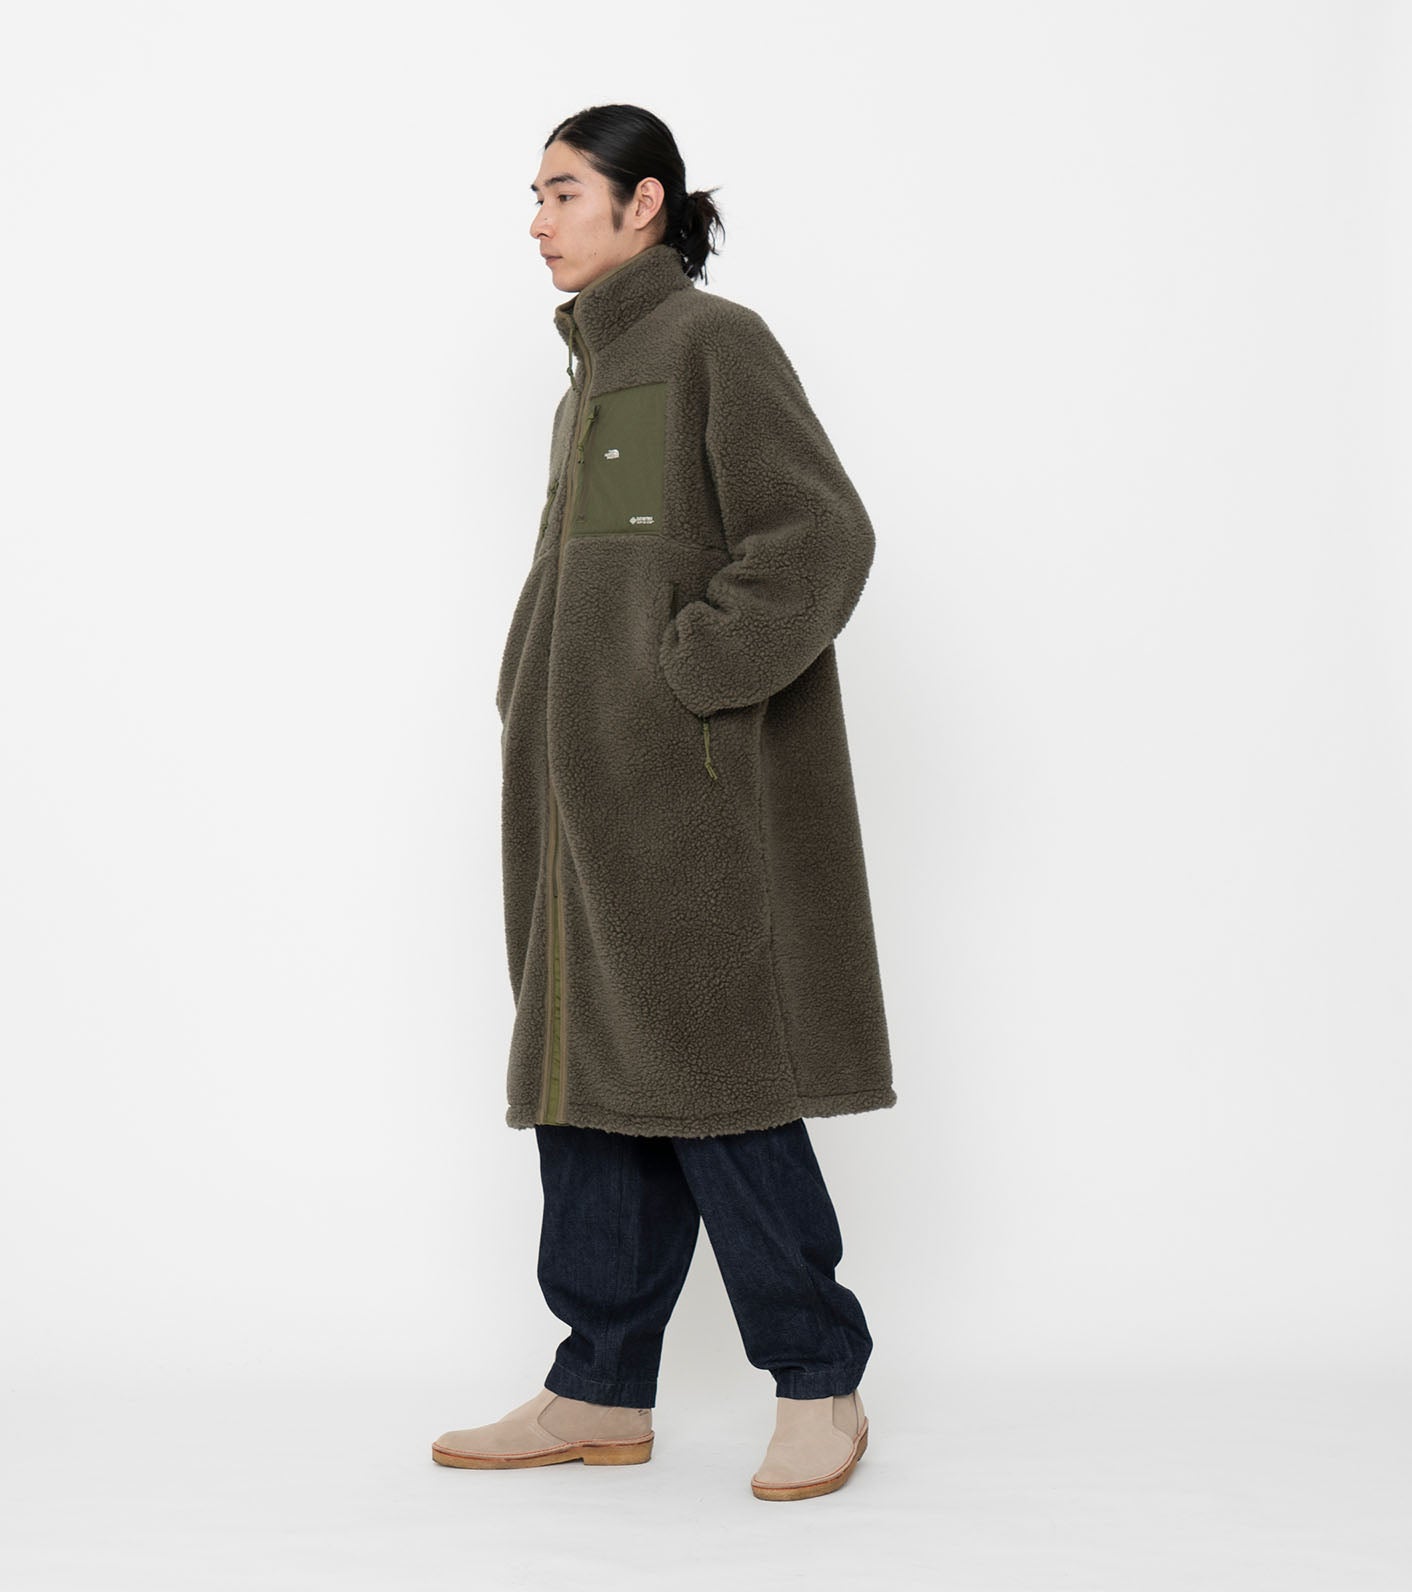 THE NORTH FACE PURPLE LABEL Wool Boa Fleece Field Coat